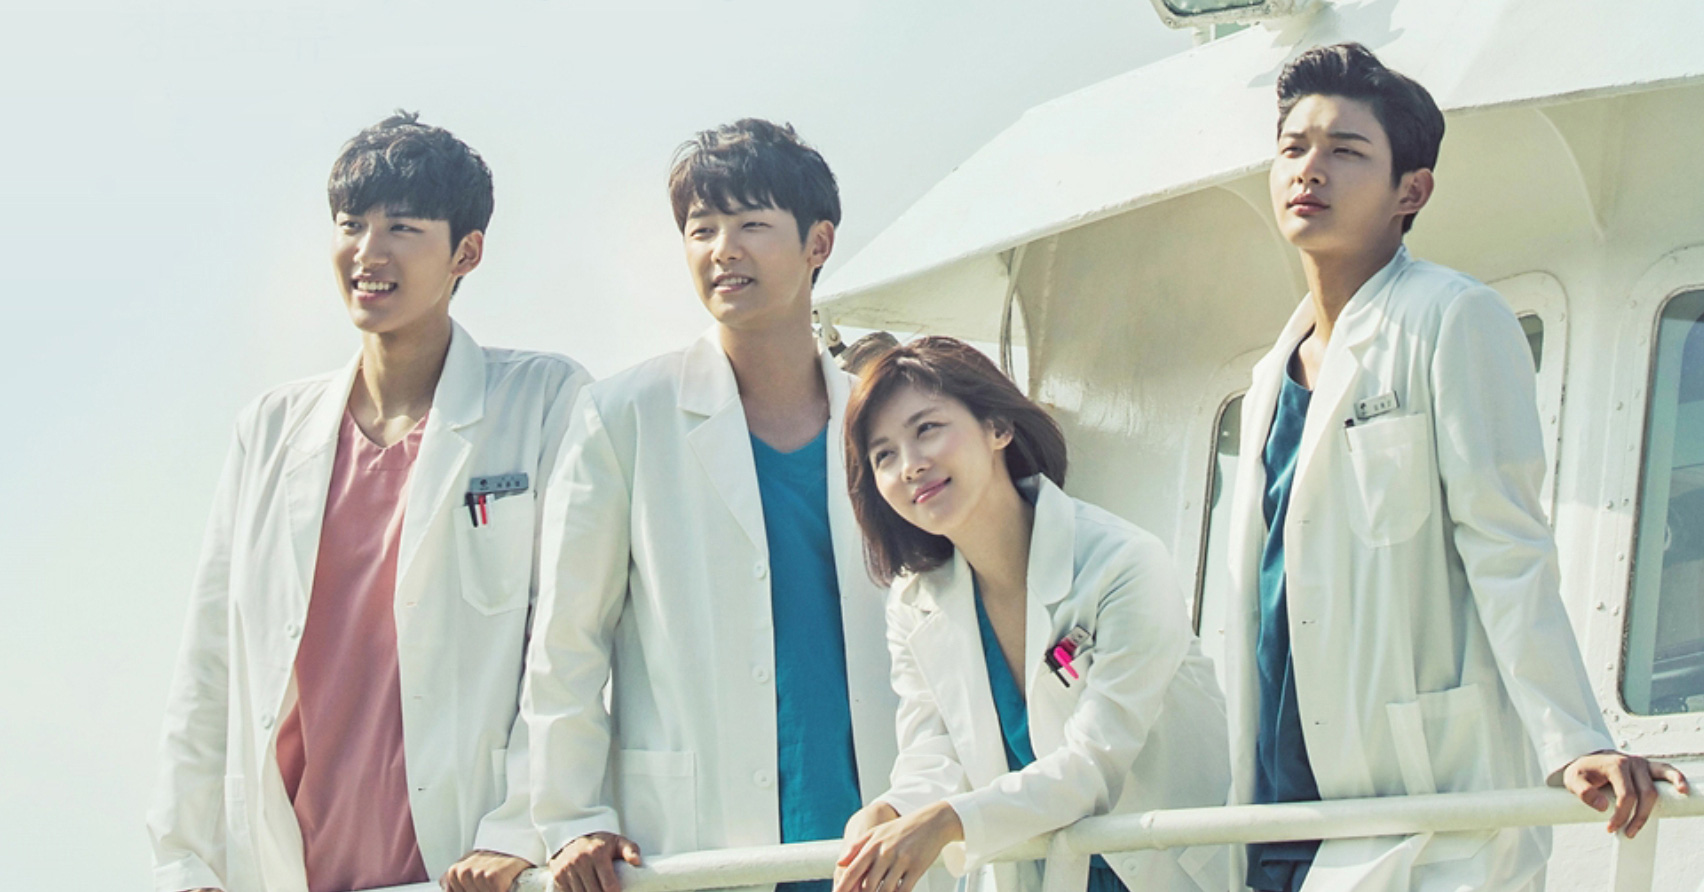 Top phim Hàn Quốc về đề tài bác sĩ hot nhất những năm gần đây